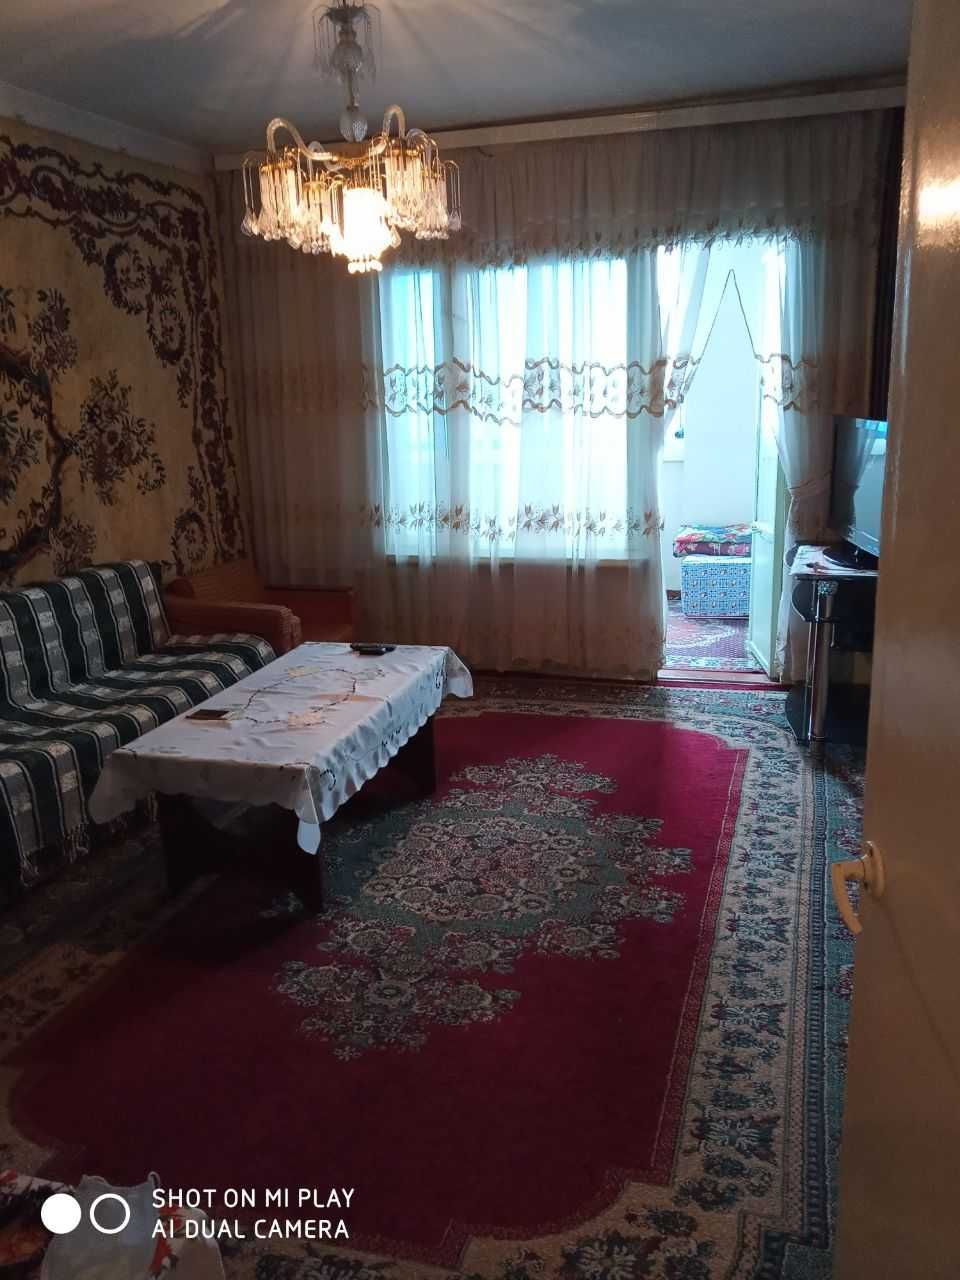 (К121186) Продается 2-х комнатная квартира в Шайхантахурском районе.